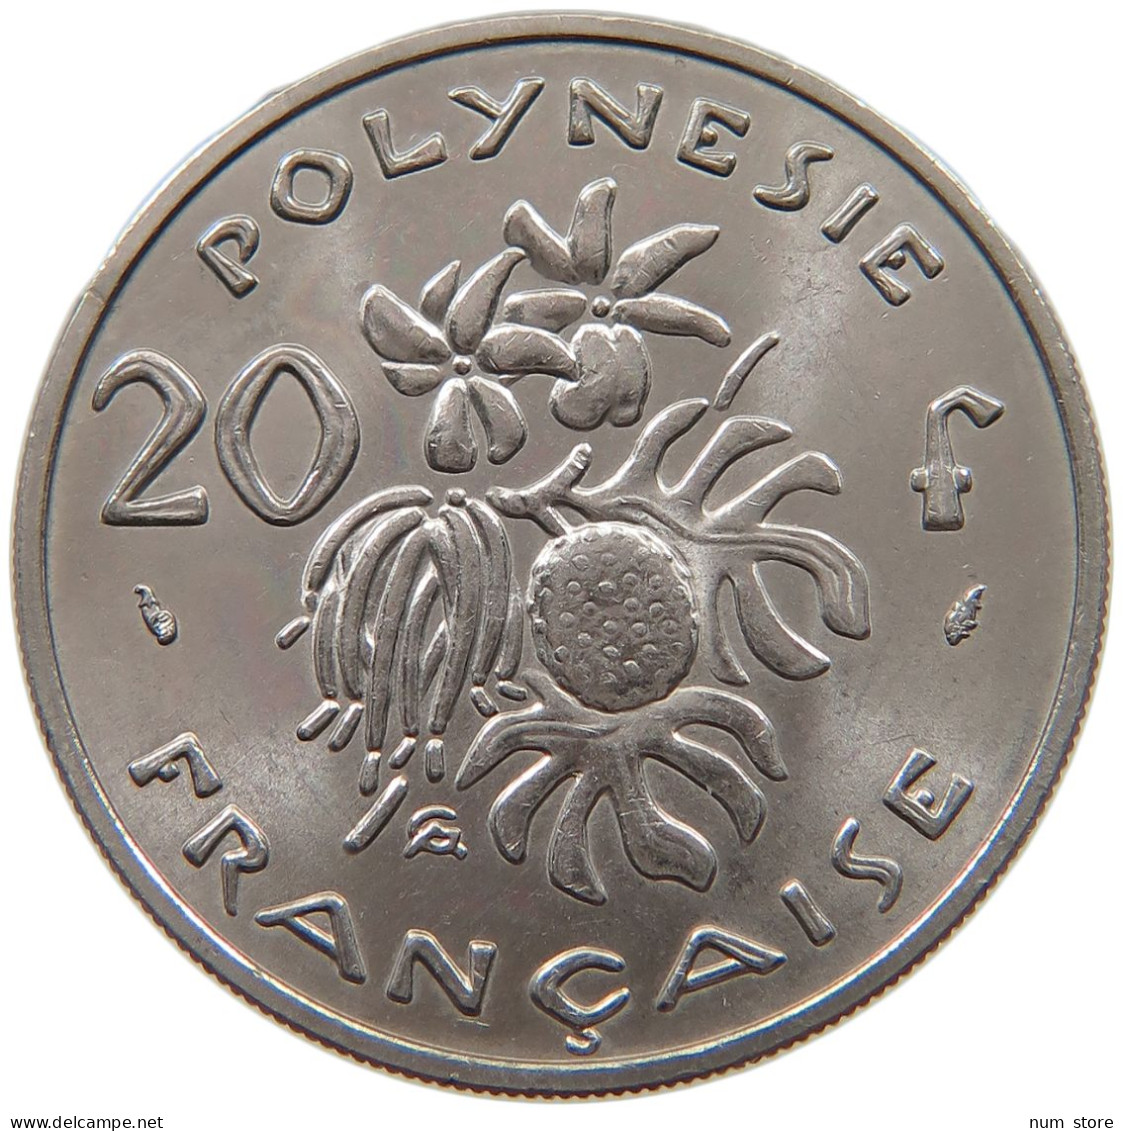 POLYNESIA 20 FRANCS 1977  #a053 0825 - French Polynesia